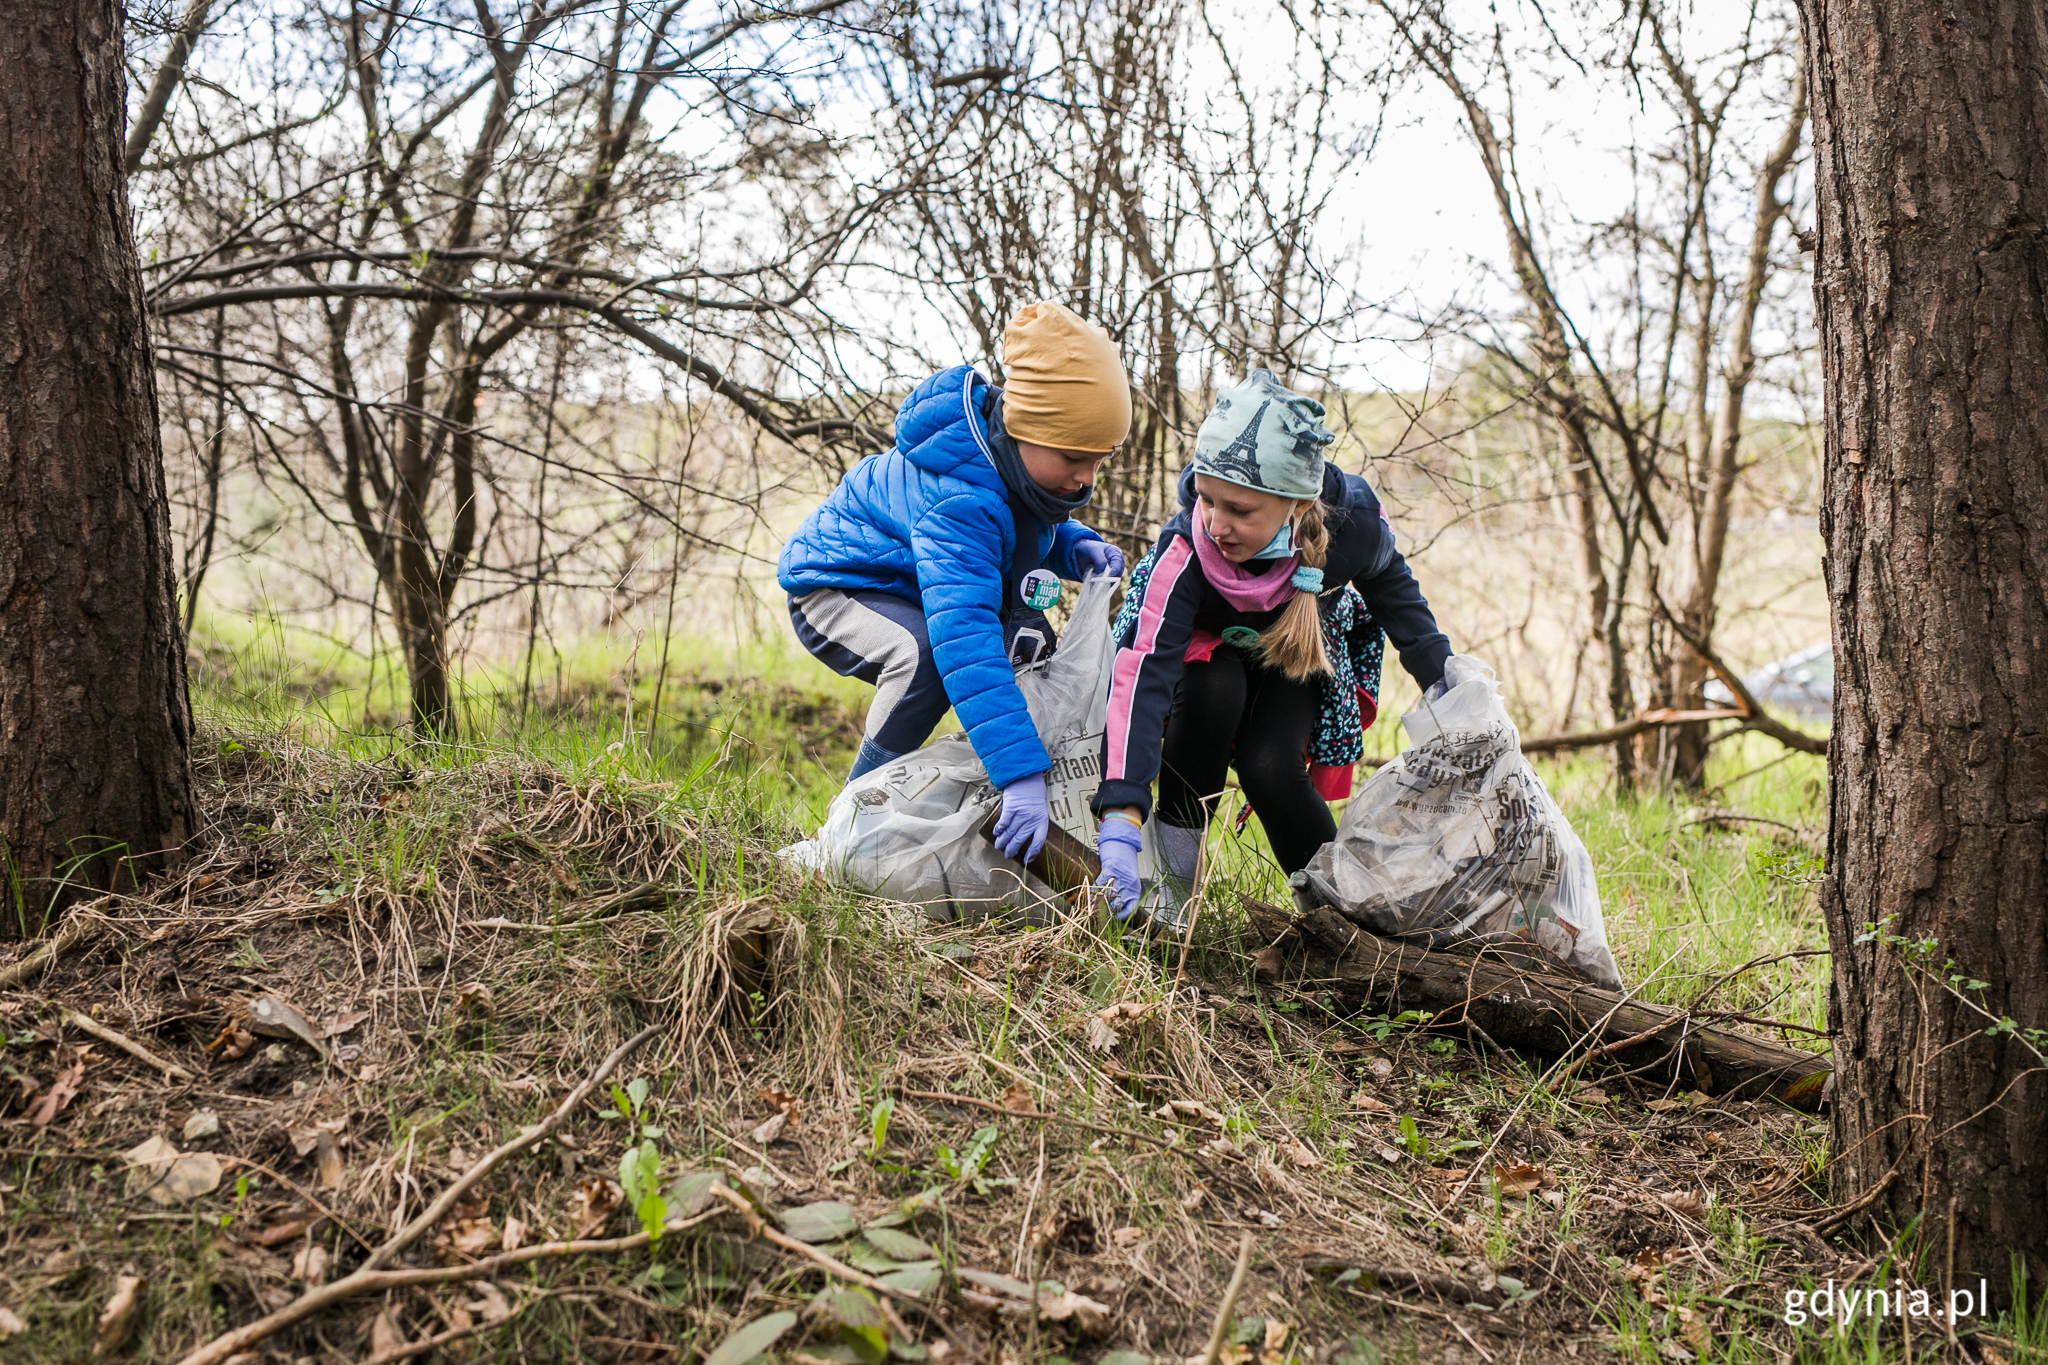 Częścią edukacji o recyklingu są organizowane w Gdyni akcje wspólnego sprzątania lasów i dzielnic. N/z sprzątanie na Karwinach w 2021 r. Fot. Karol Stańczak